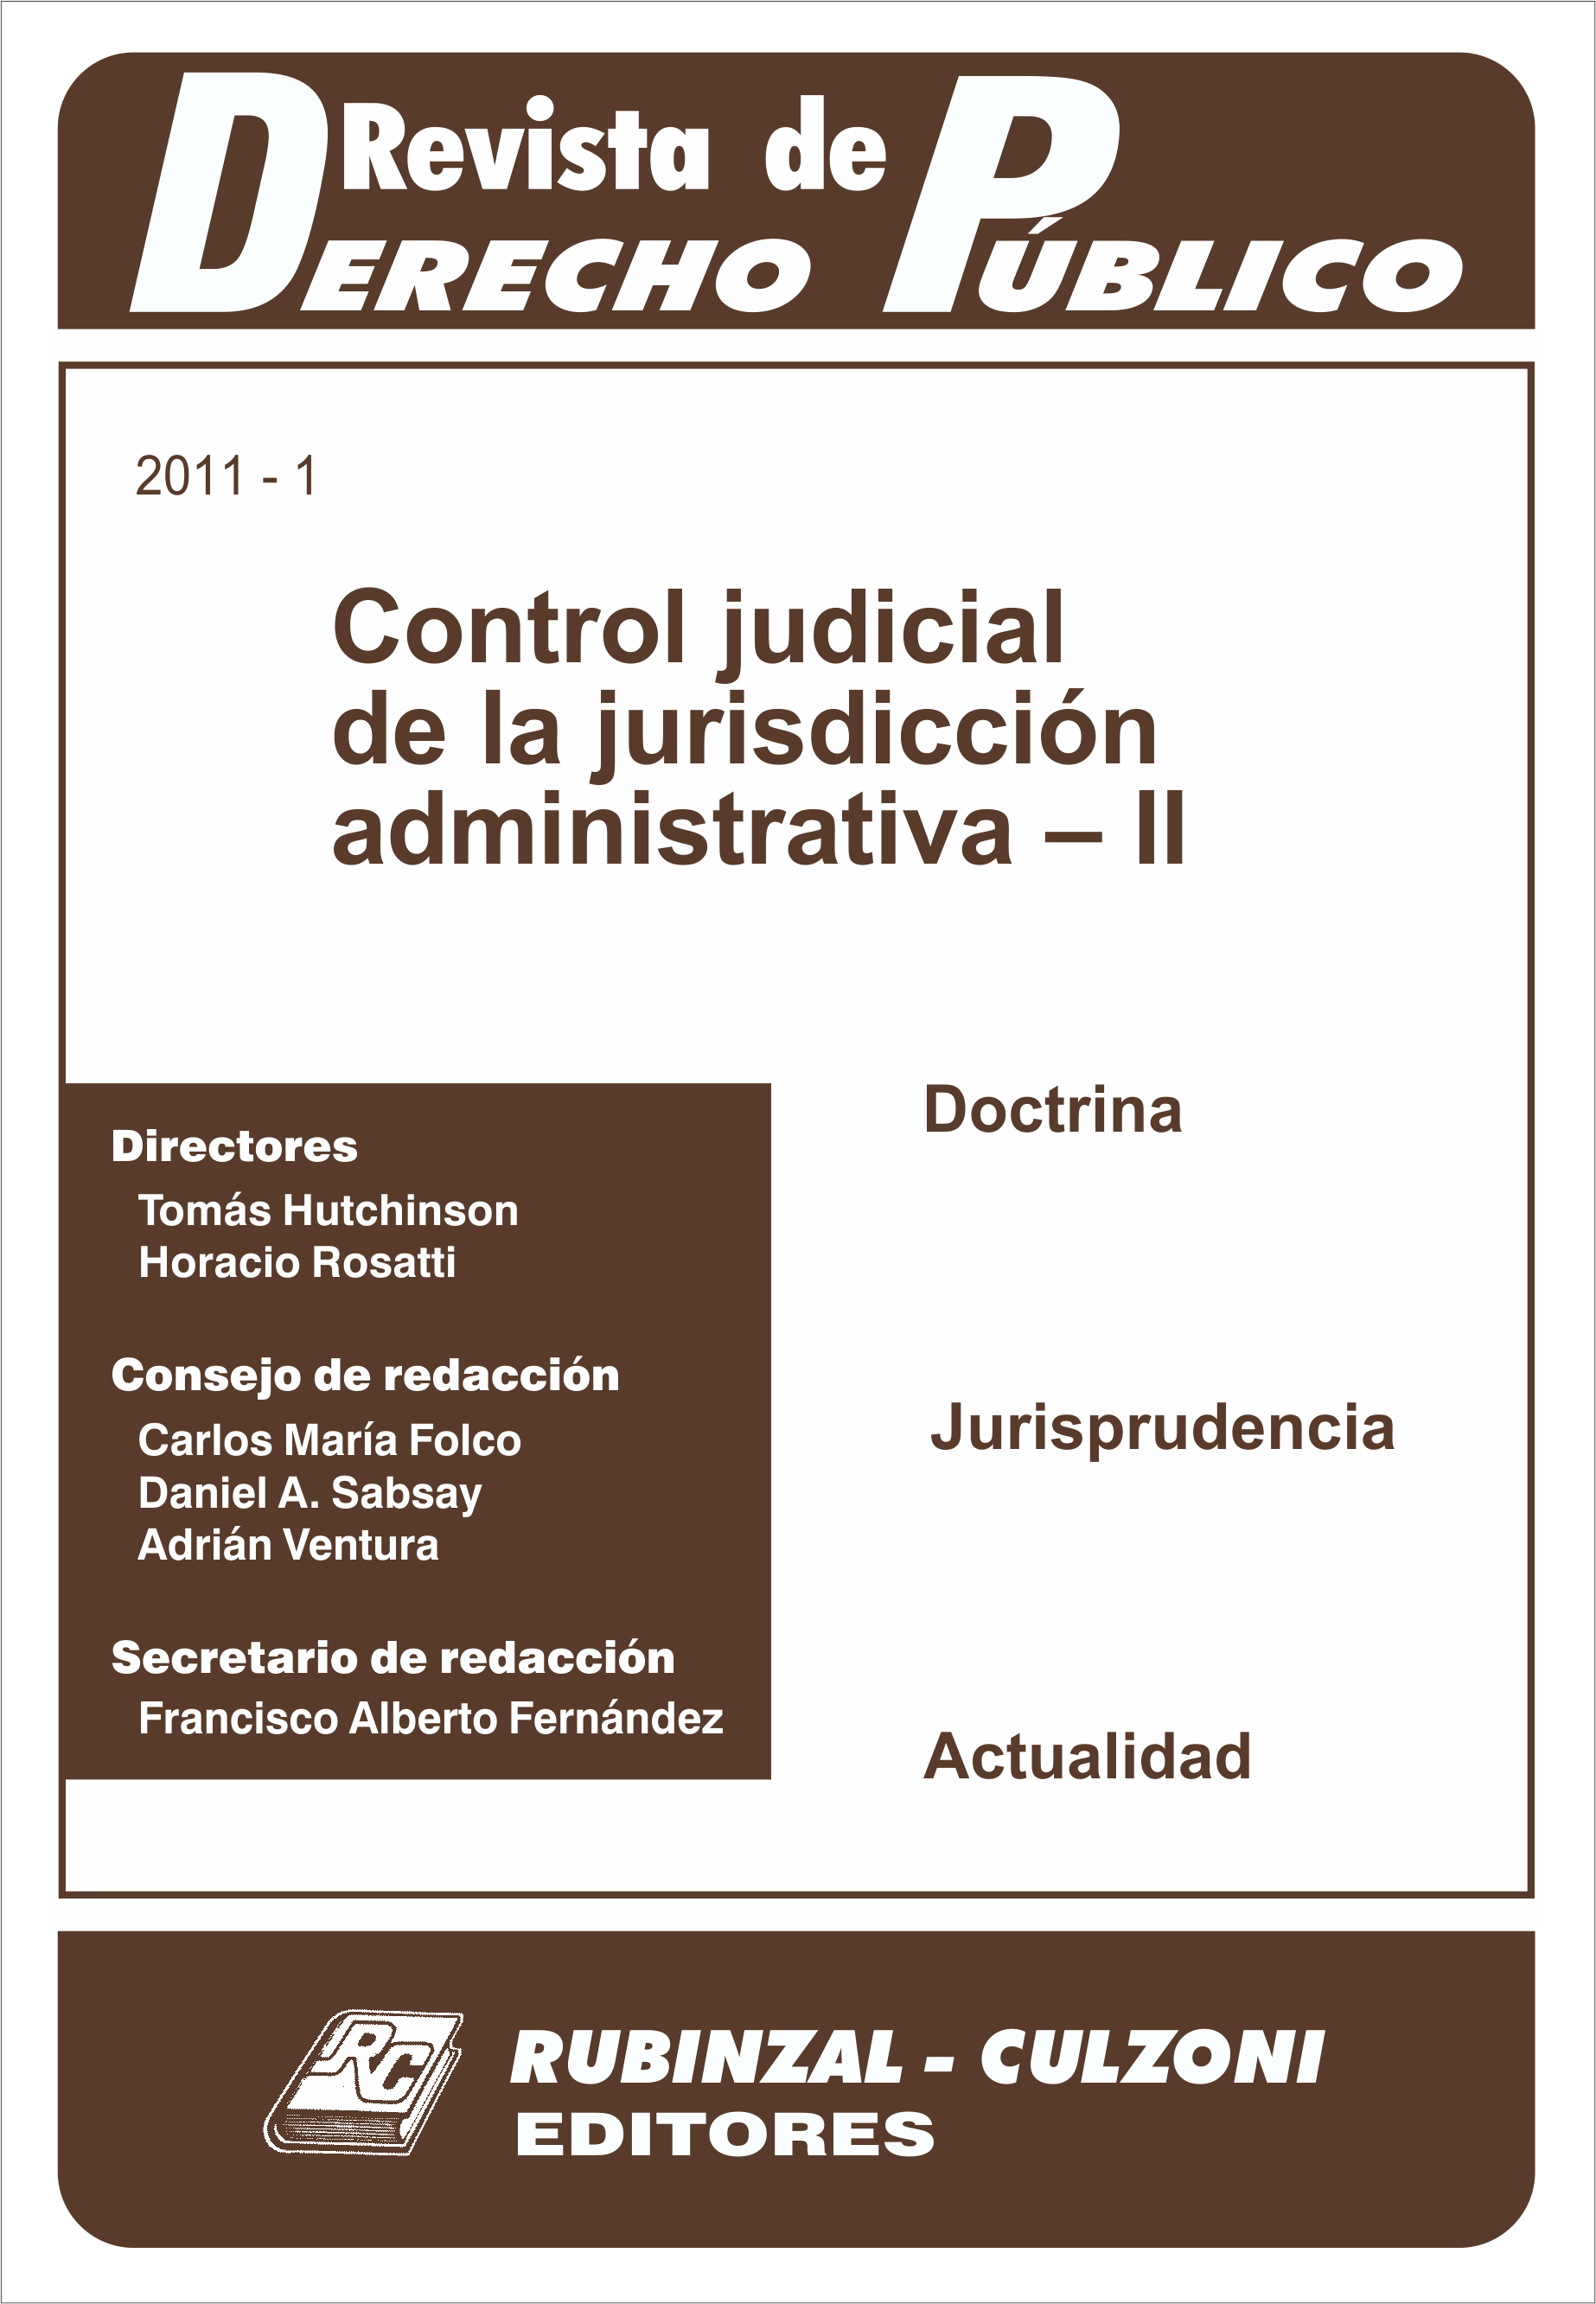 Revista de Derecho Público - Control judicial de la jurisdicción administrativa - II.